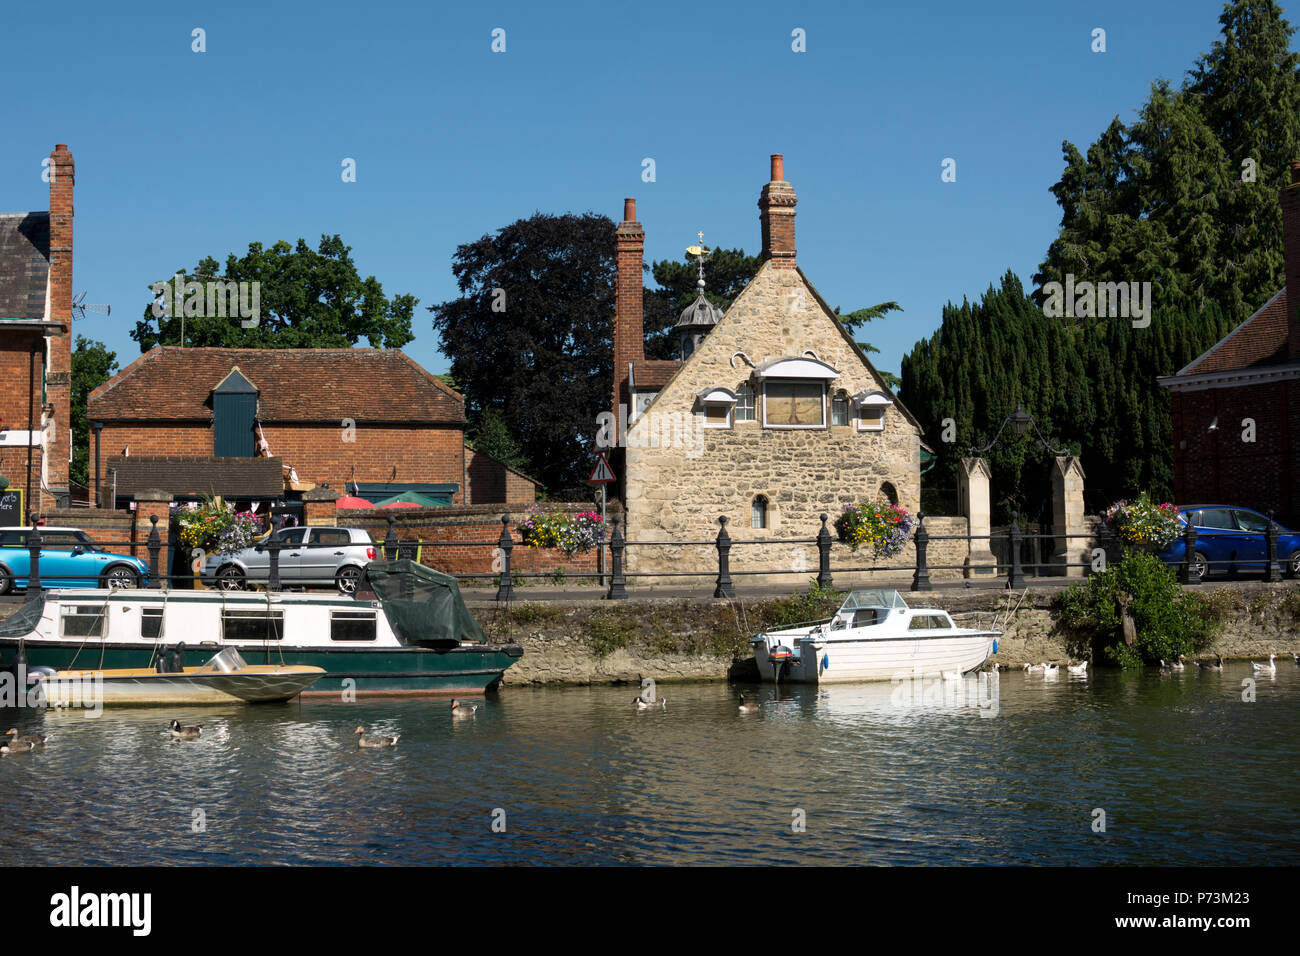 Vue sur la Tamise vers longue allée hospices, Abingdon-on-Thames, Oxfordshire, England, UK Banque D'Images